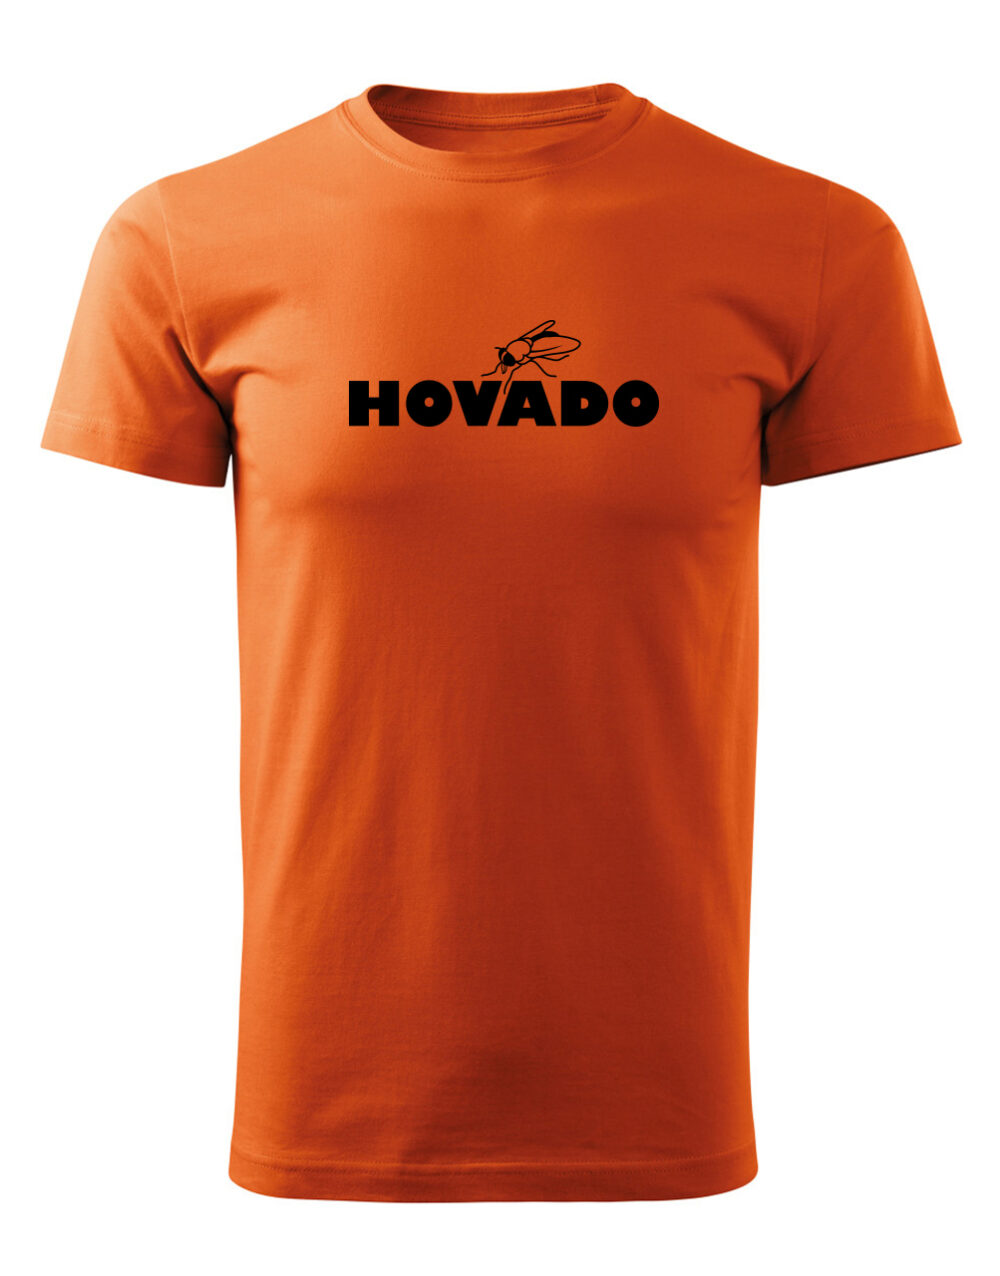 Pánské tričko s potiskem Hovado oranžová